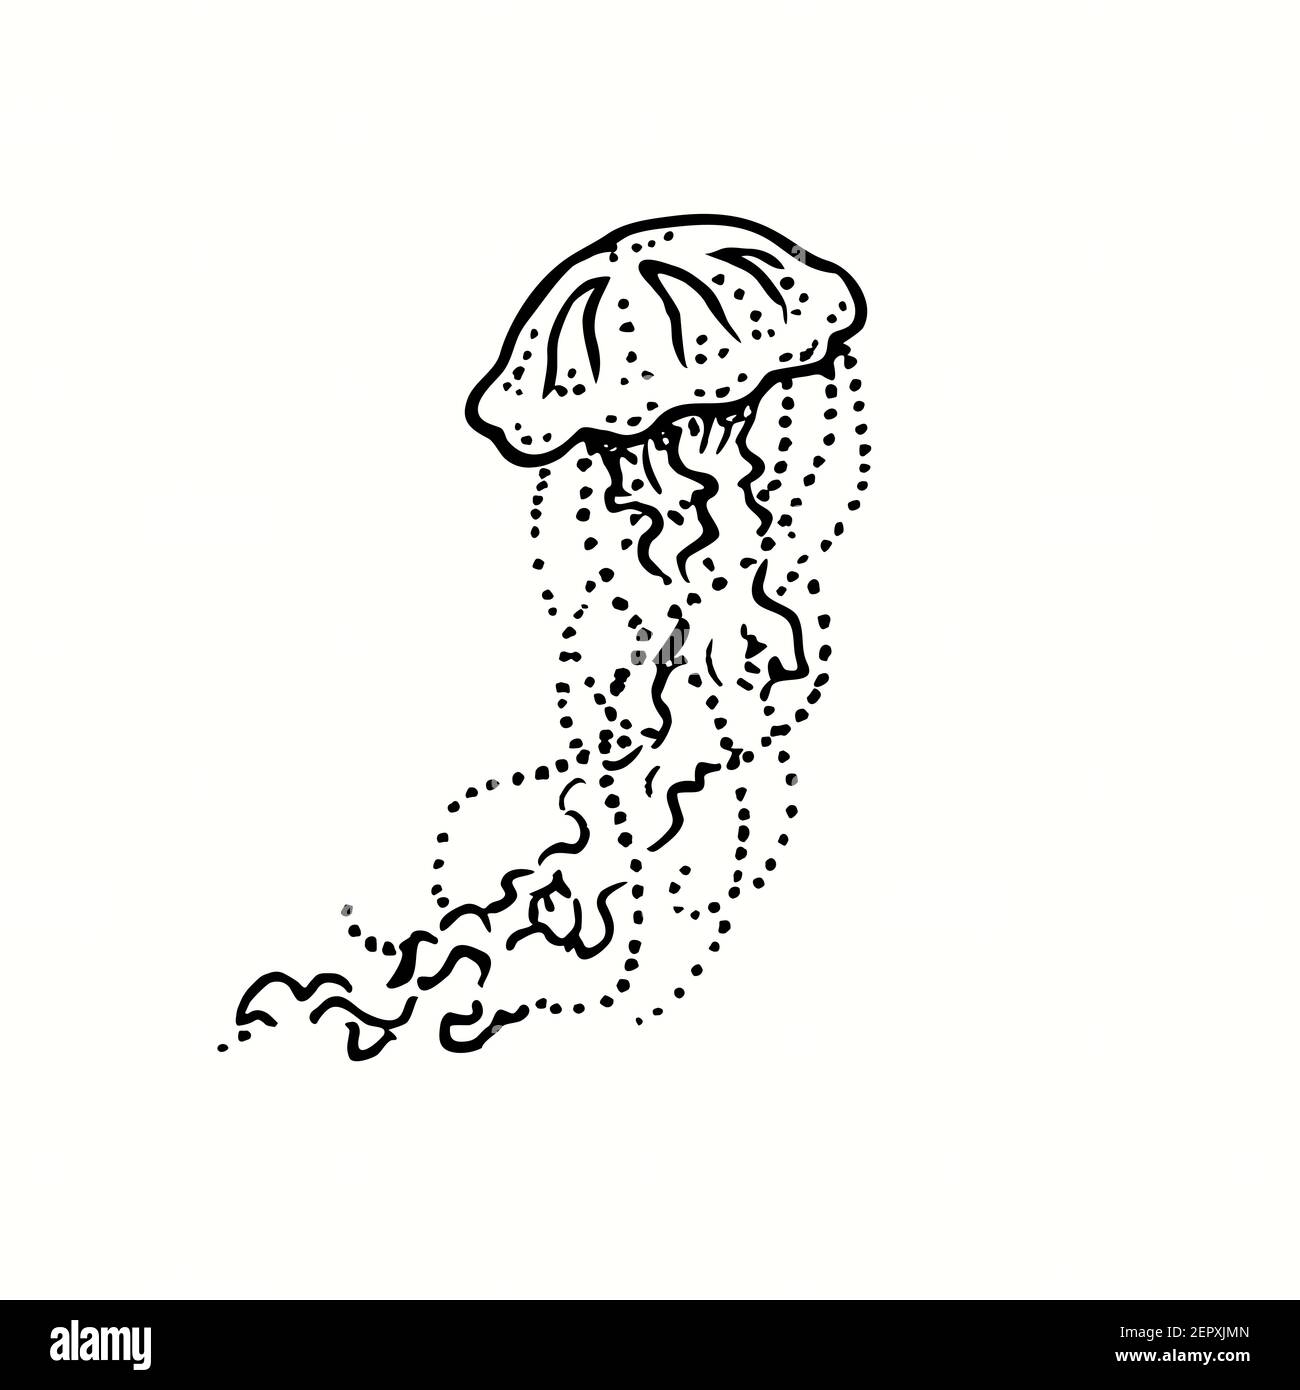 jellyfish drawings